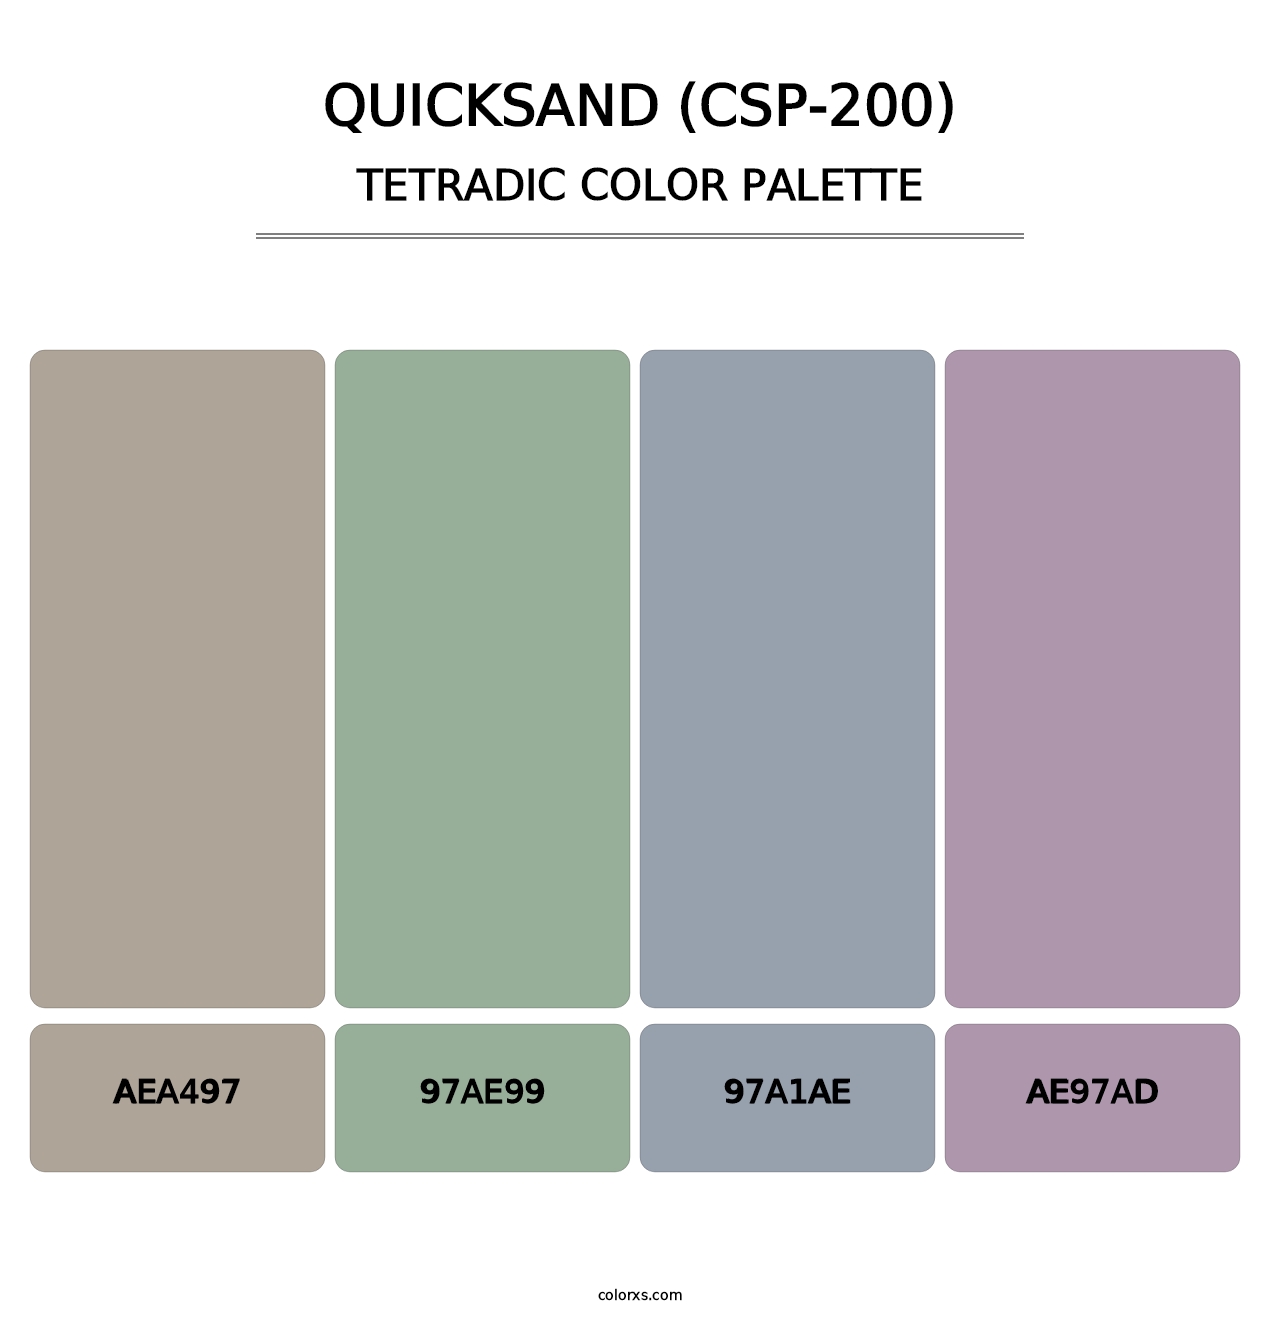 Quicksand (CSP-200) - Tetradic Color Palette